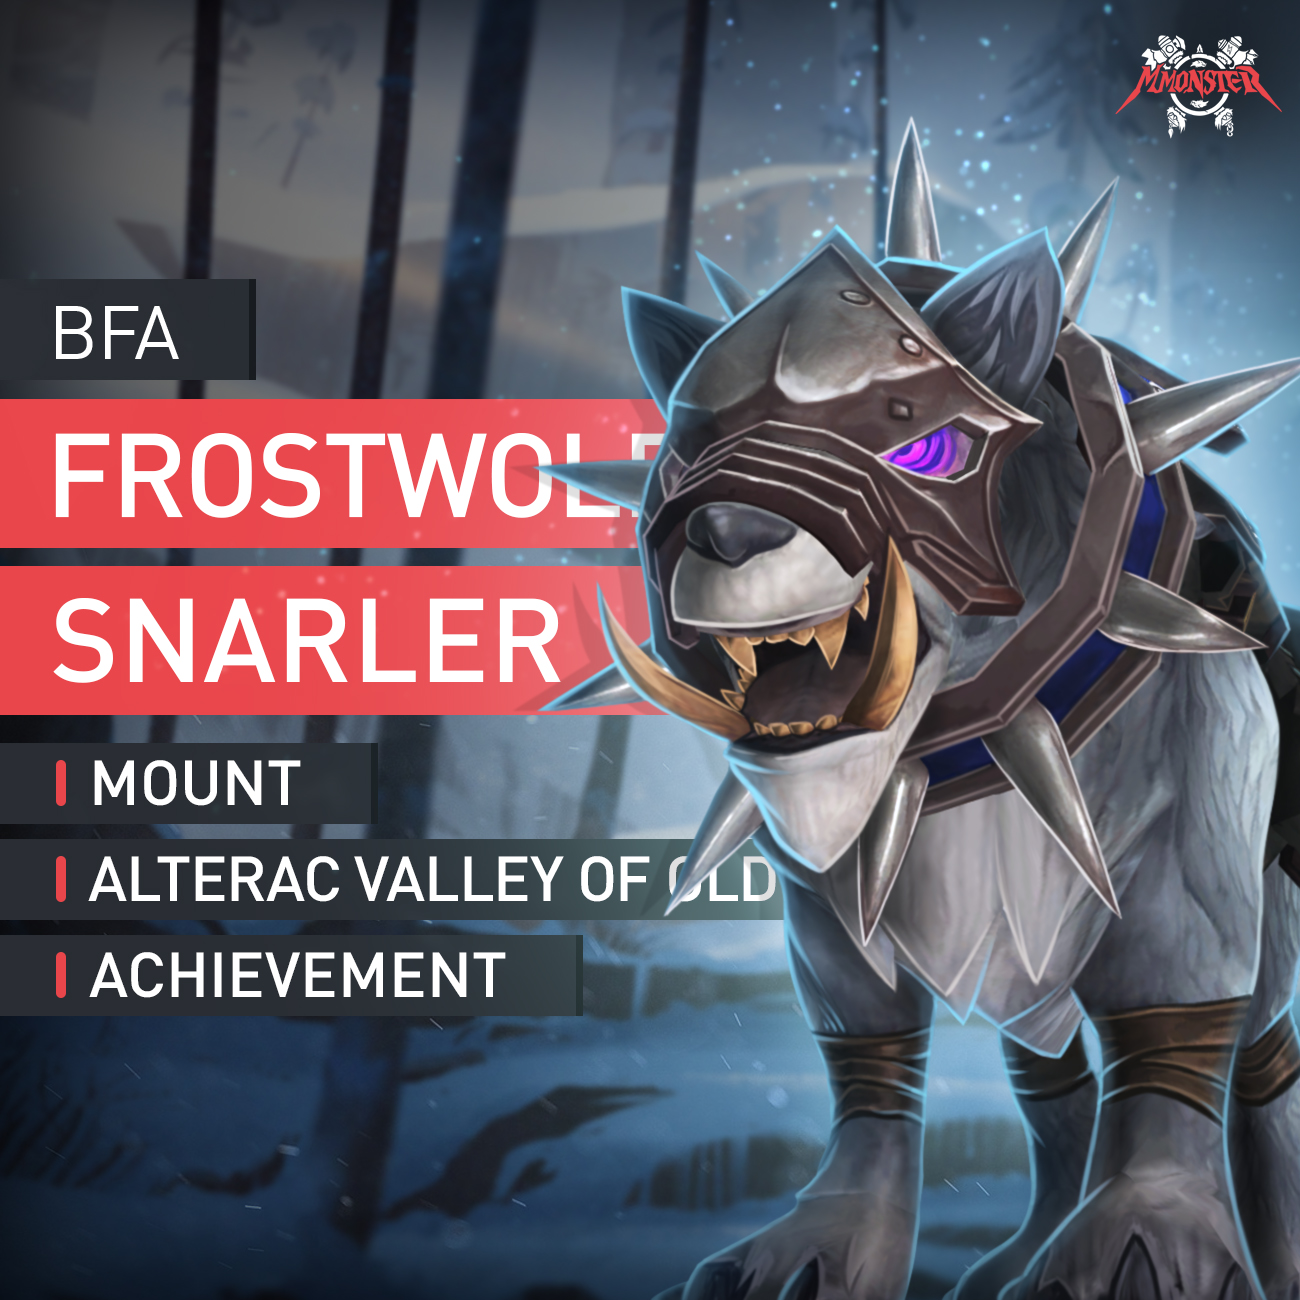 Frostwolf Snarler Mount